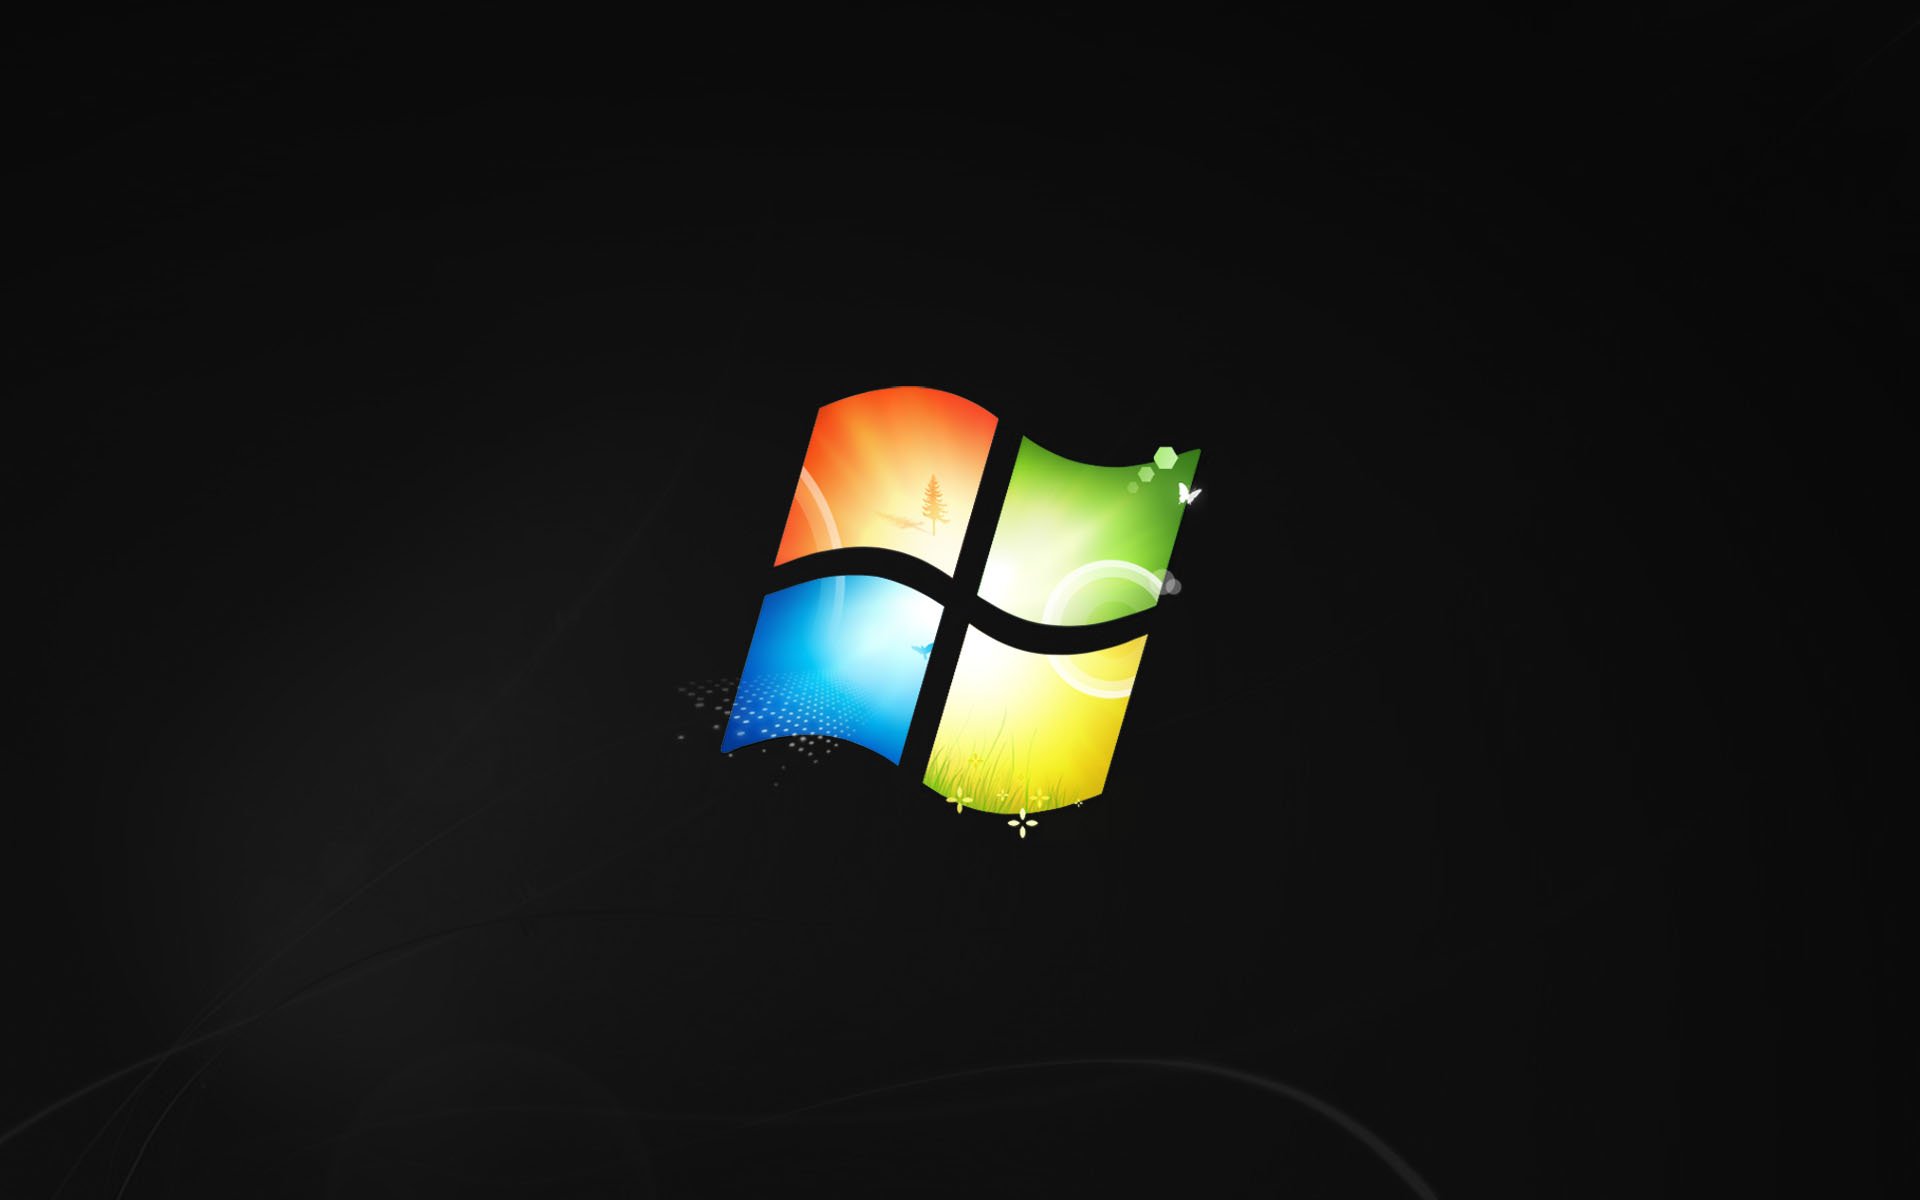 Windows 7 Wallpaper werden nun schwarz